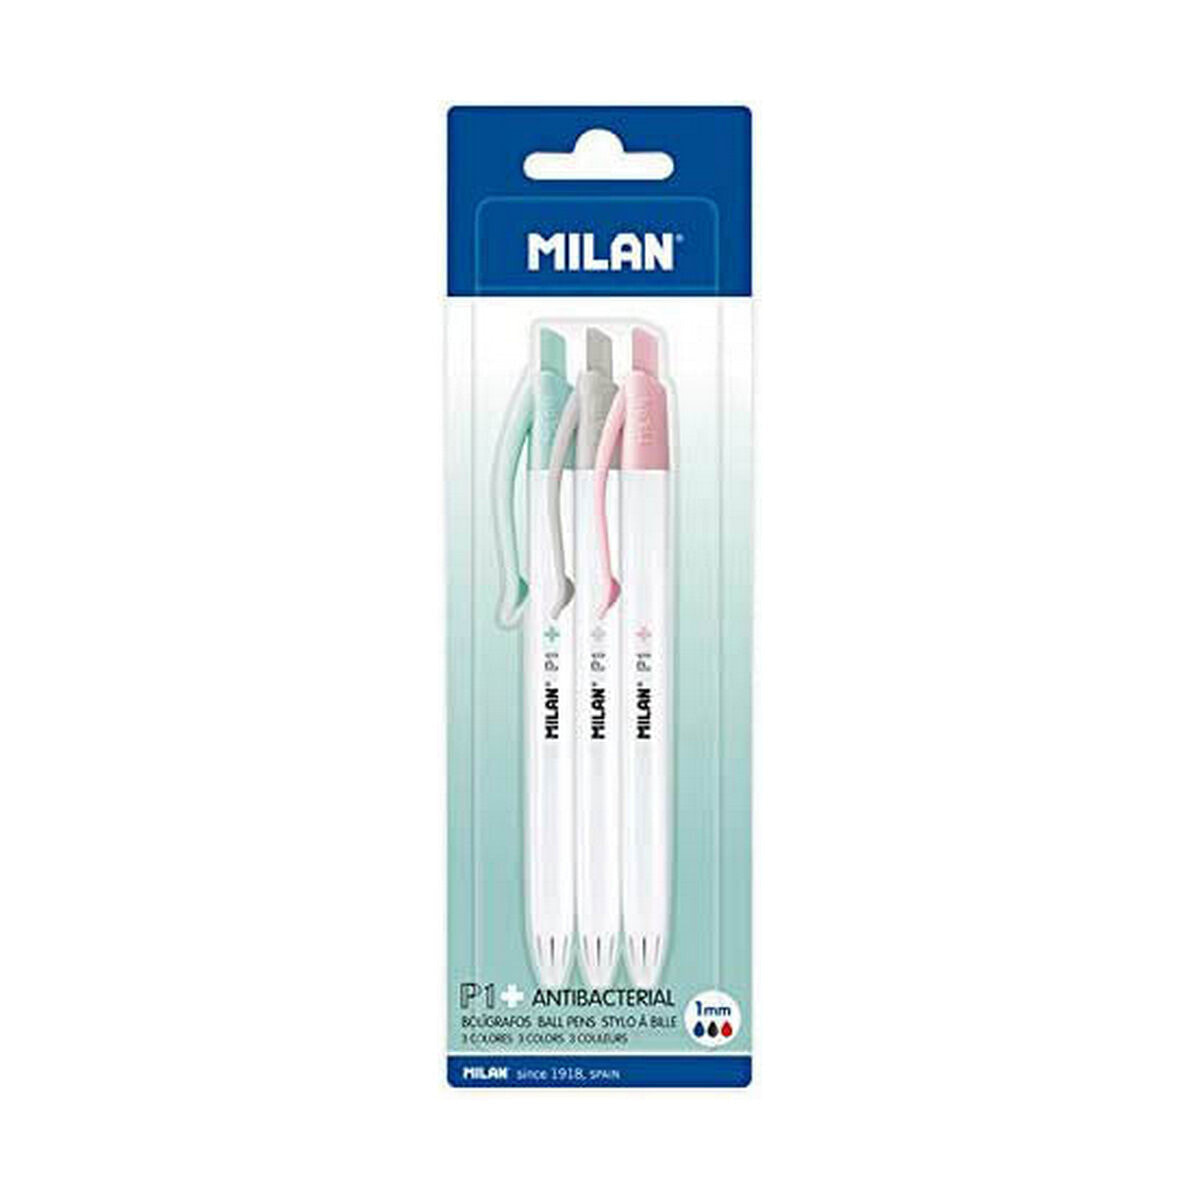 Antibacterial Pen Milan P1 Set